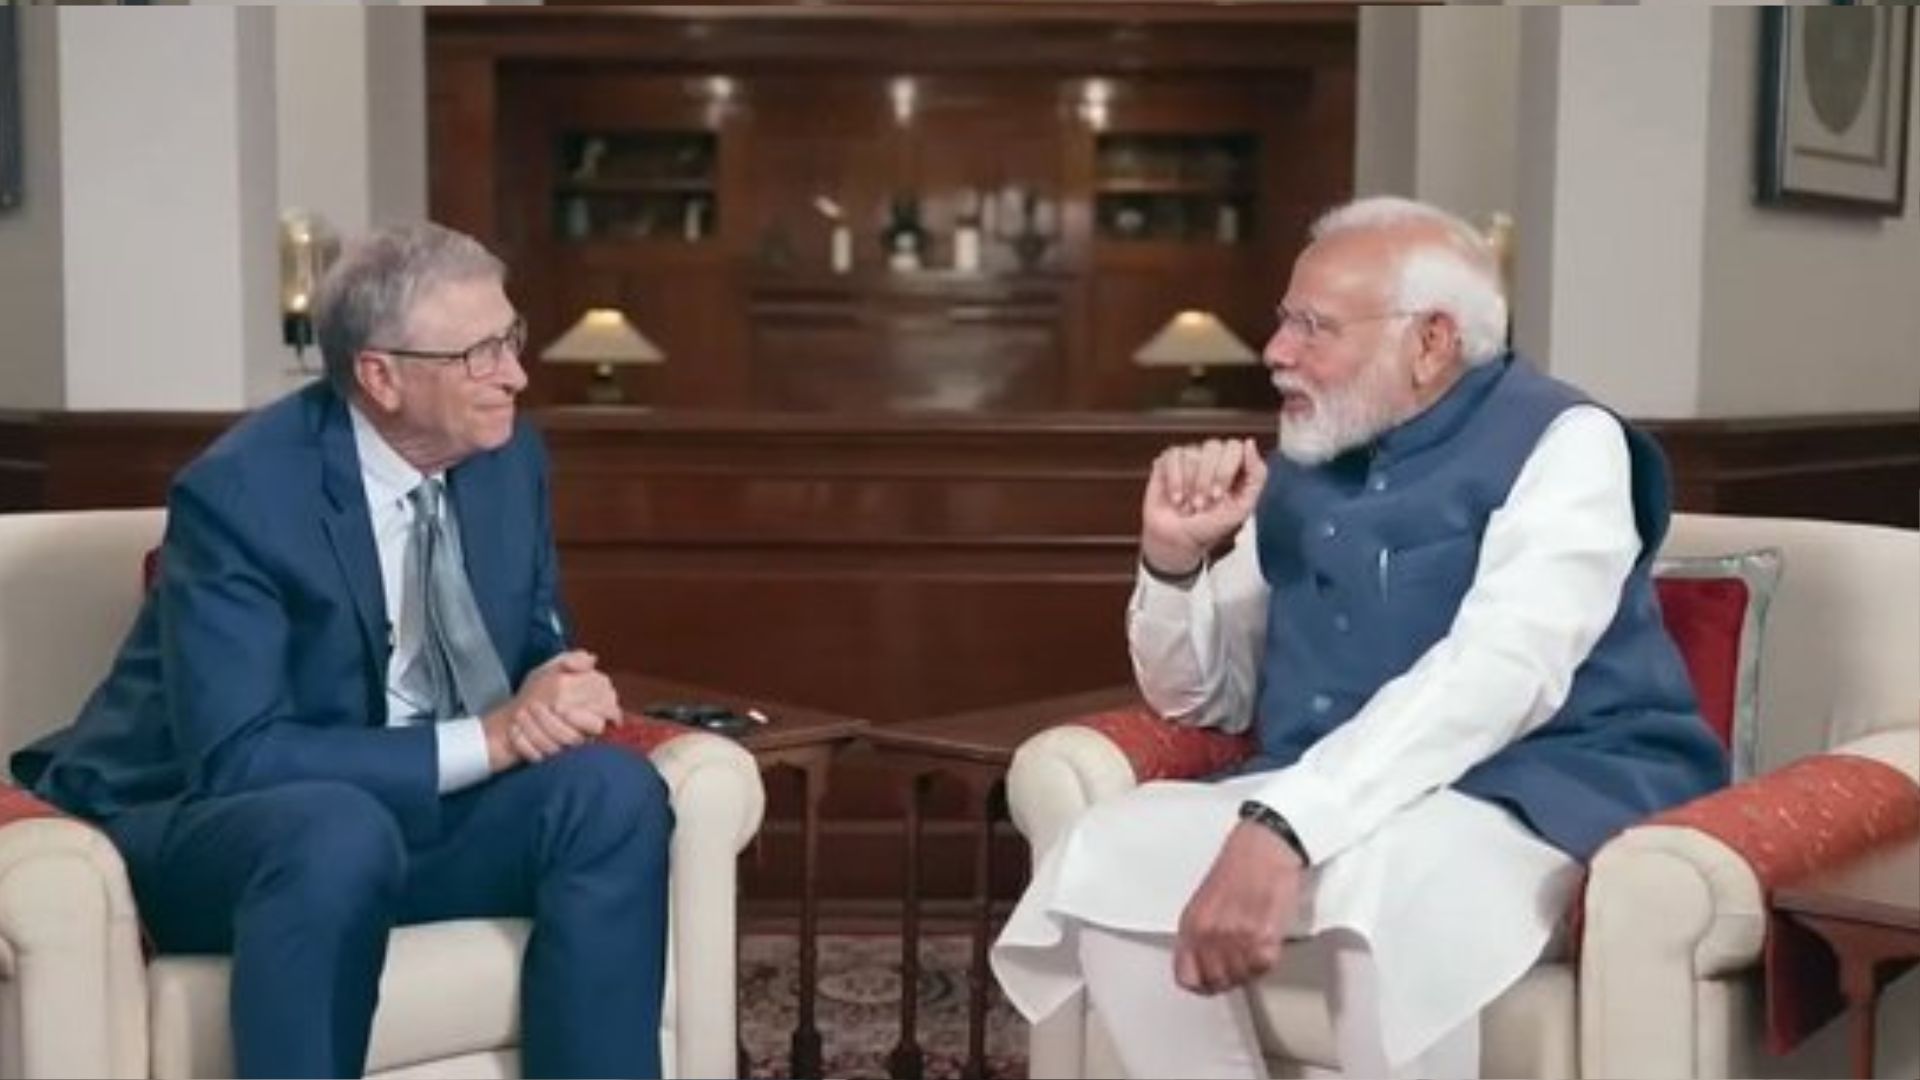 'हमारे यहां बच्चा पैदा होता है तो 'आई' और AI दोनों बोलता है', बिल गेट्स से बोले PM मोदी...देखें VIDEO